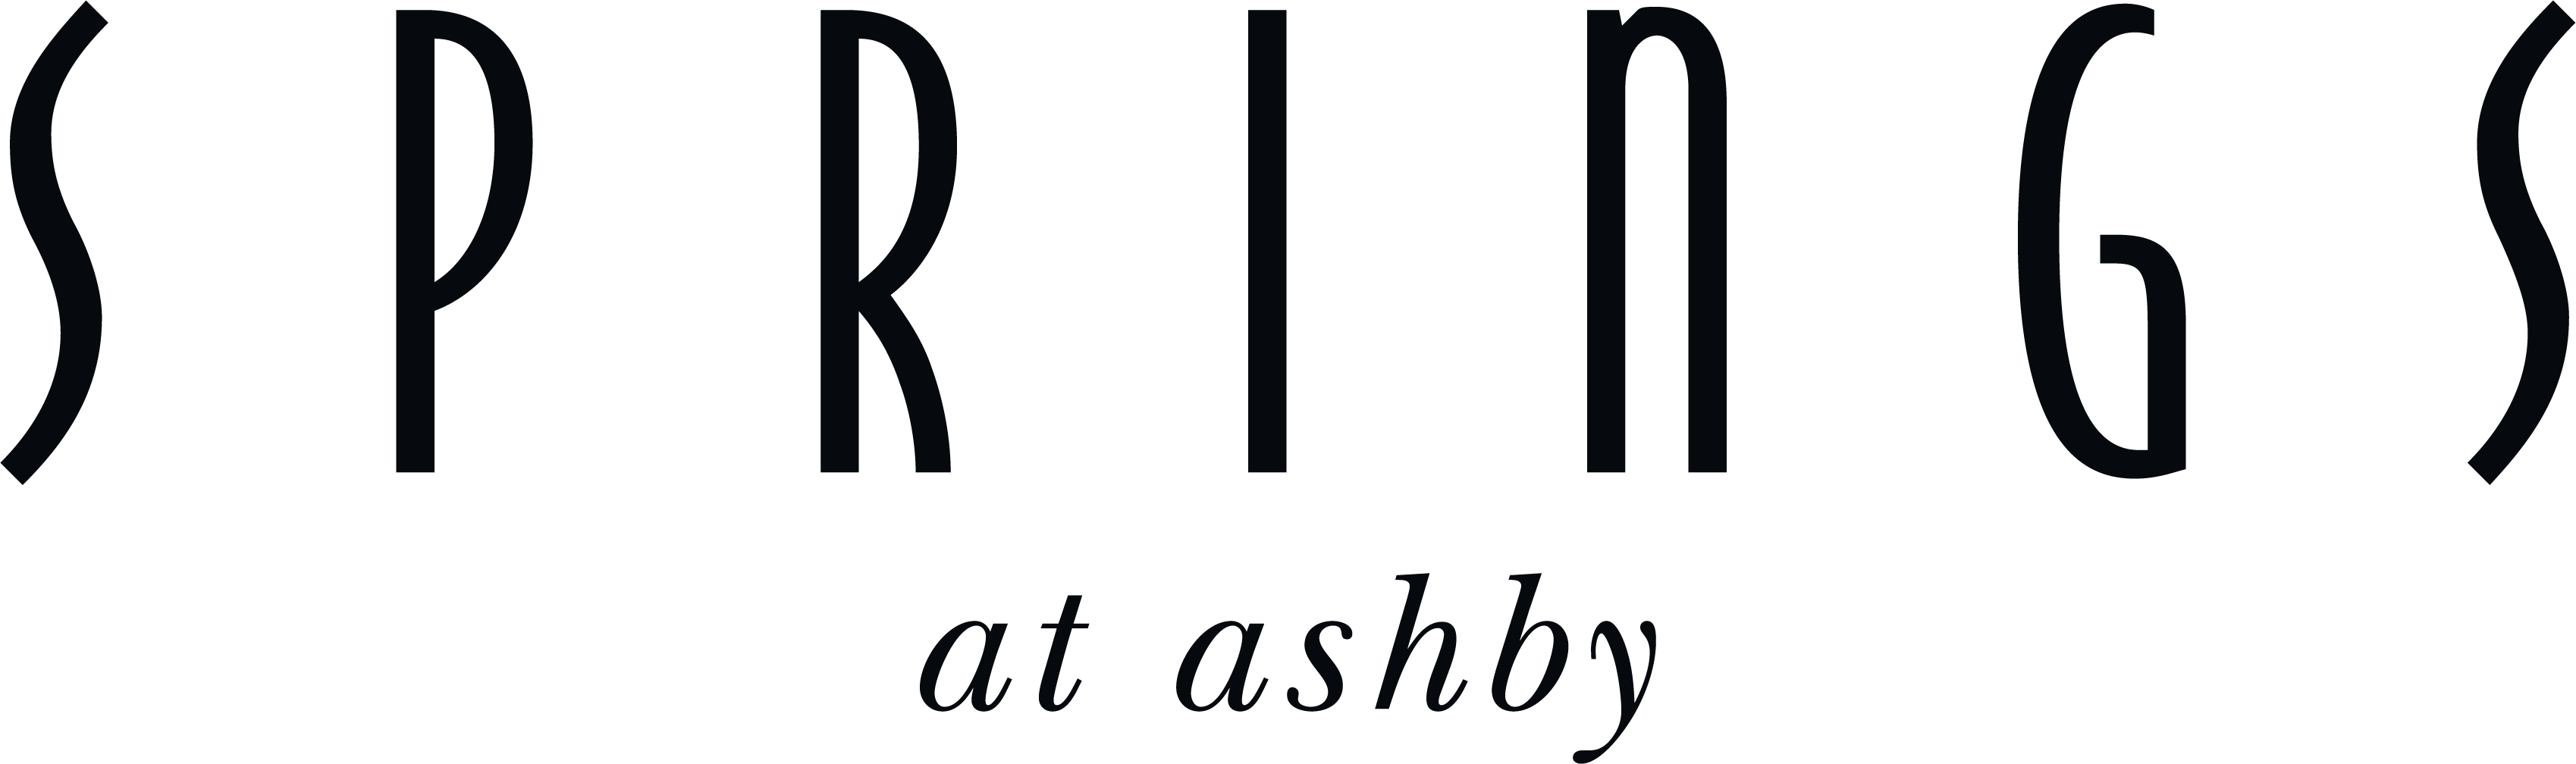 Springs at Ashby Apartments black word logo-1